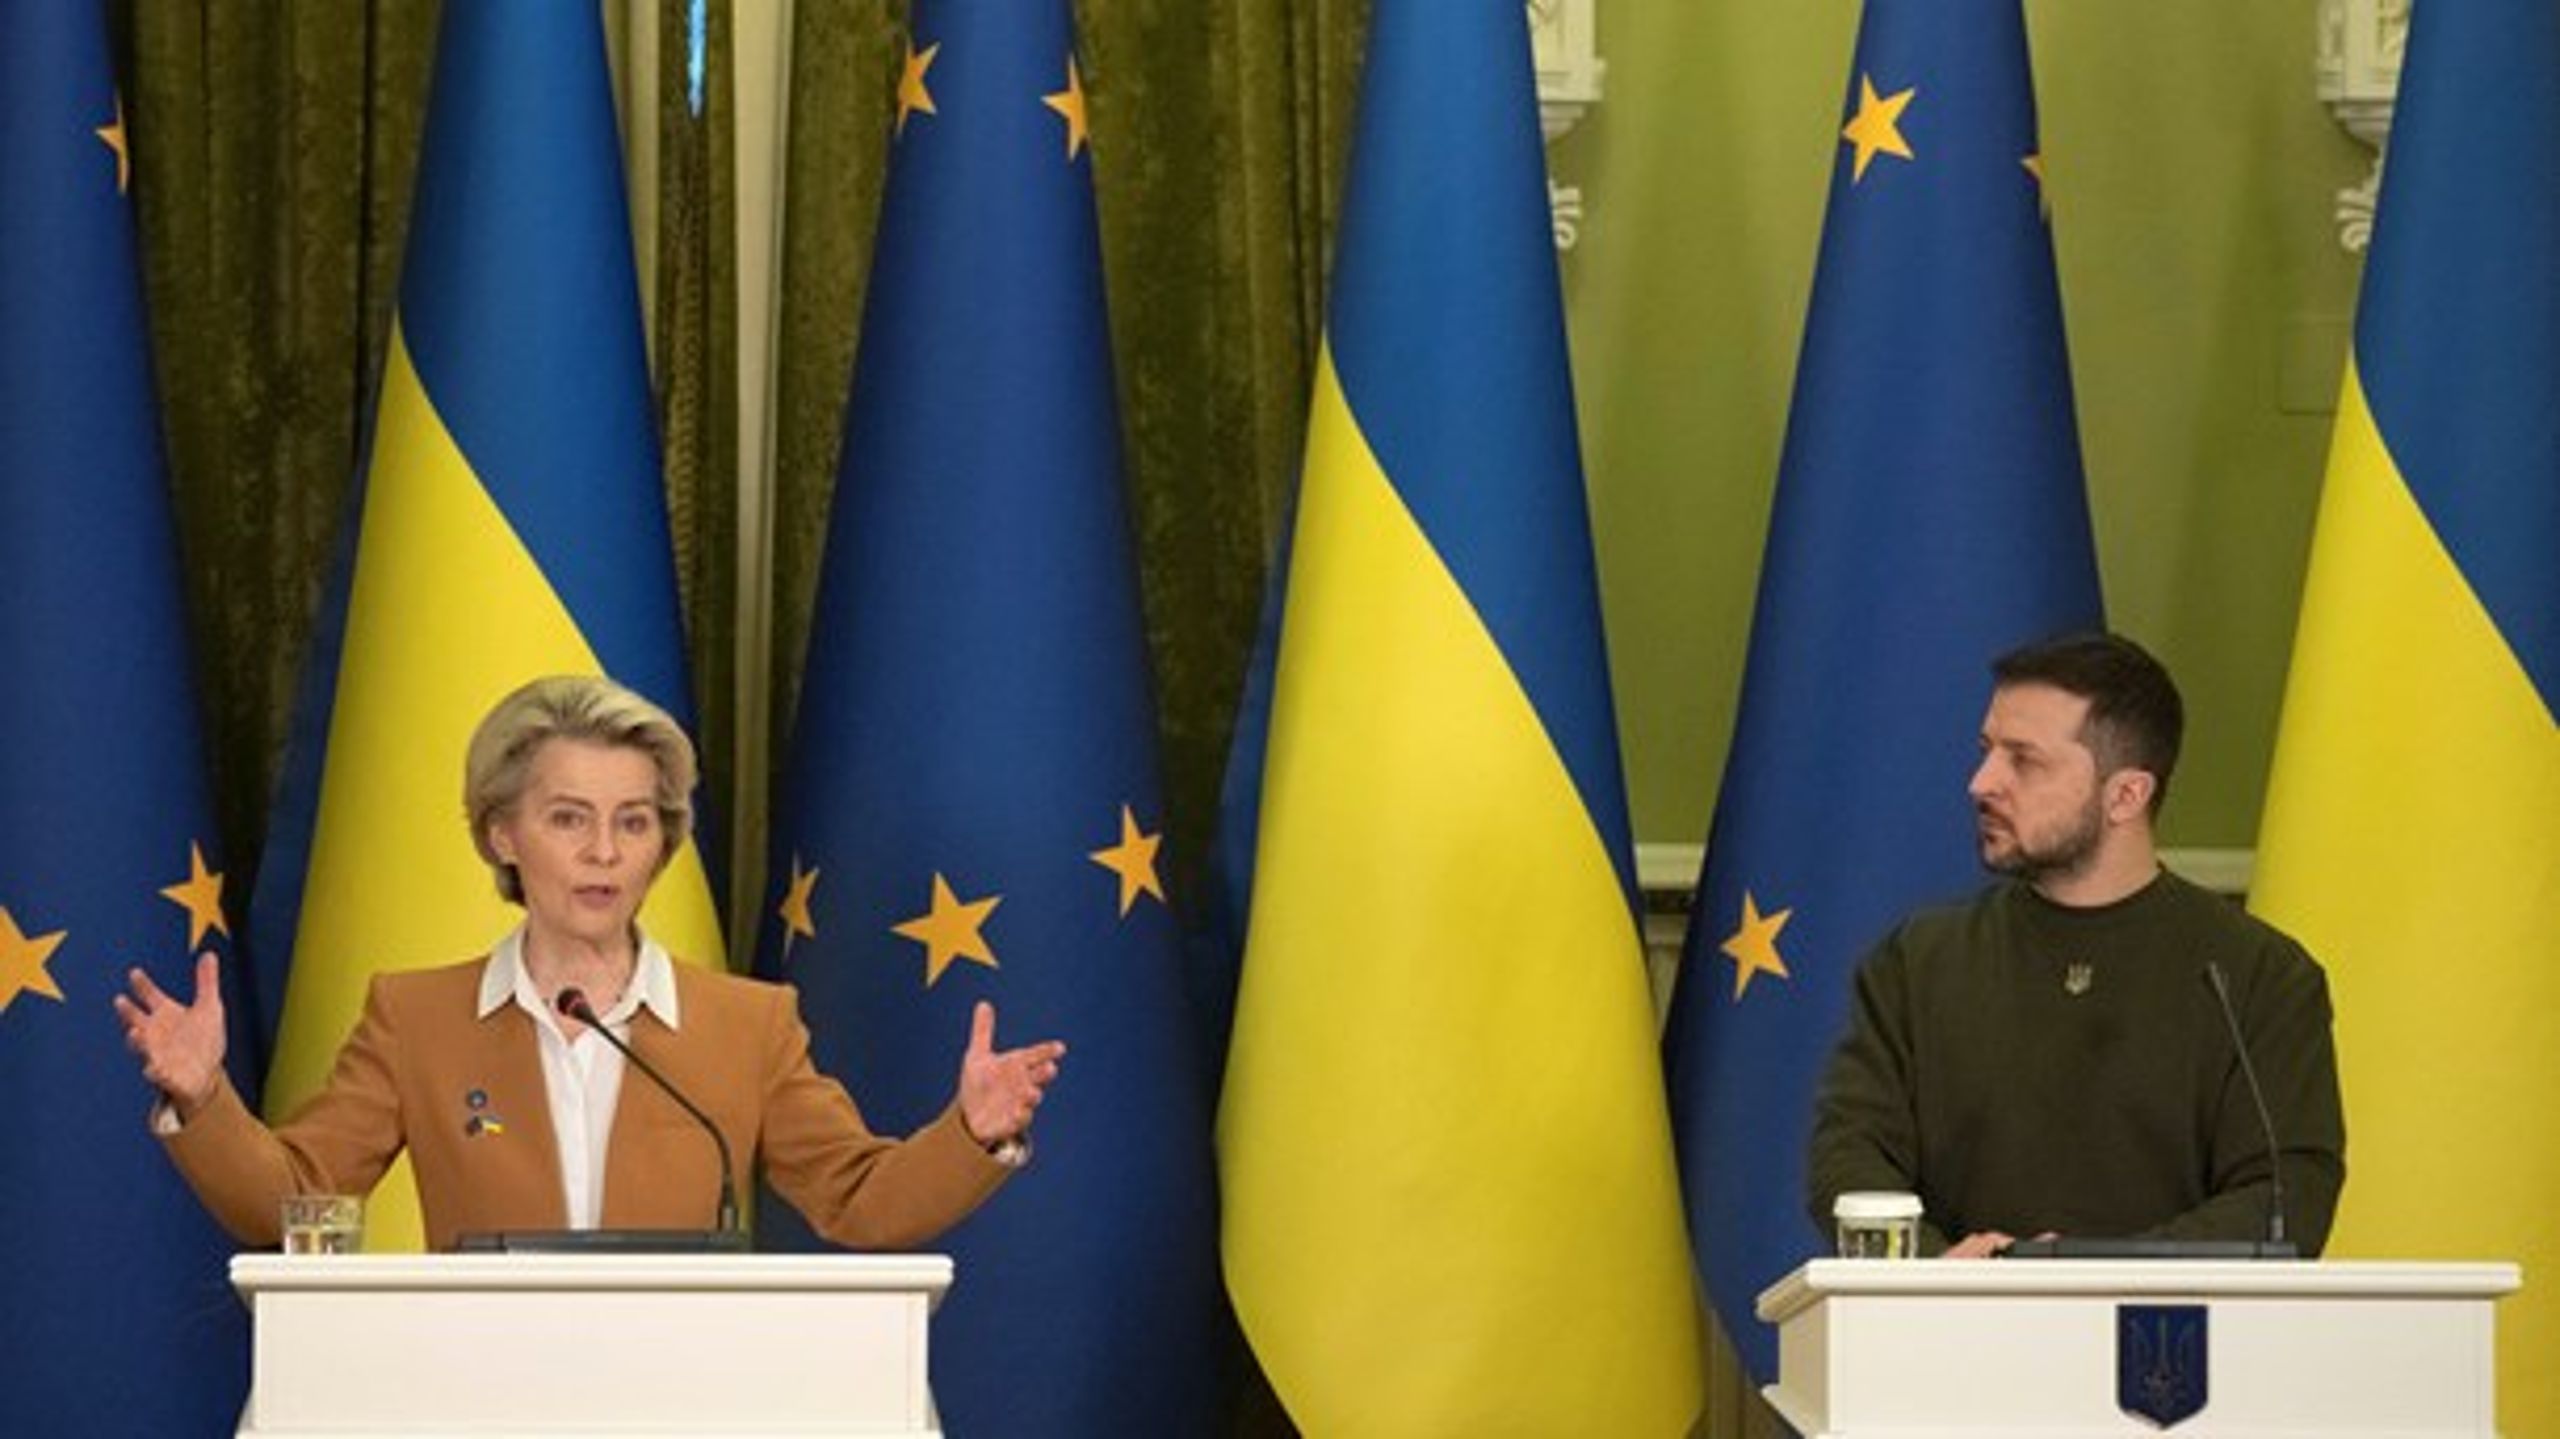 Ettt år med krig i Europa vil&nbsp;få konsekvenser langt inn i fremtiden. Her er EU-kommisjonens president Ursula von der Leyen avbildet i møte med Ukrainas president&nbsp;Volodymyr Zelenskyj.